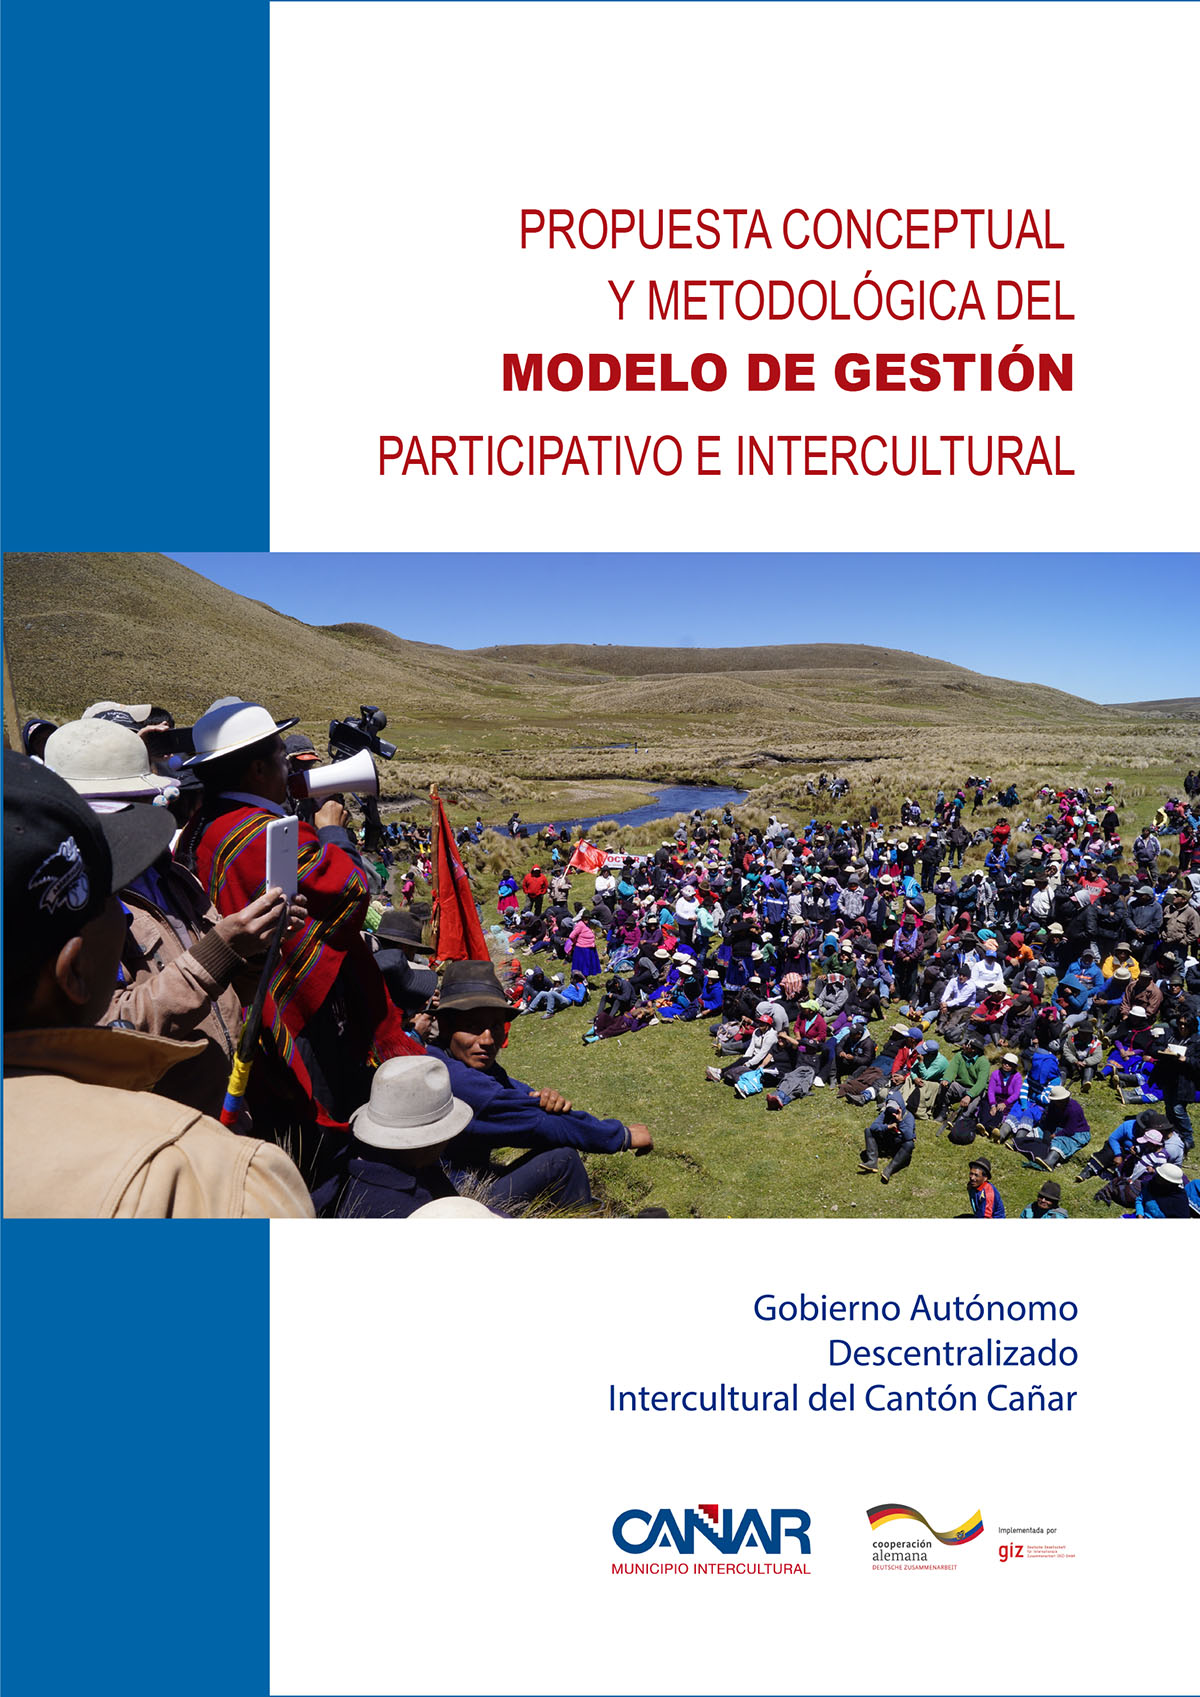 Propuesta conceptual y metodológica del modelo de gestión participativo e intercultural